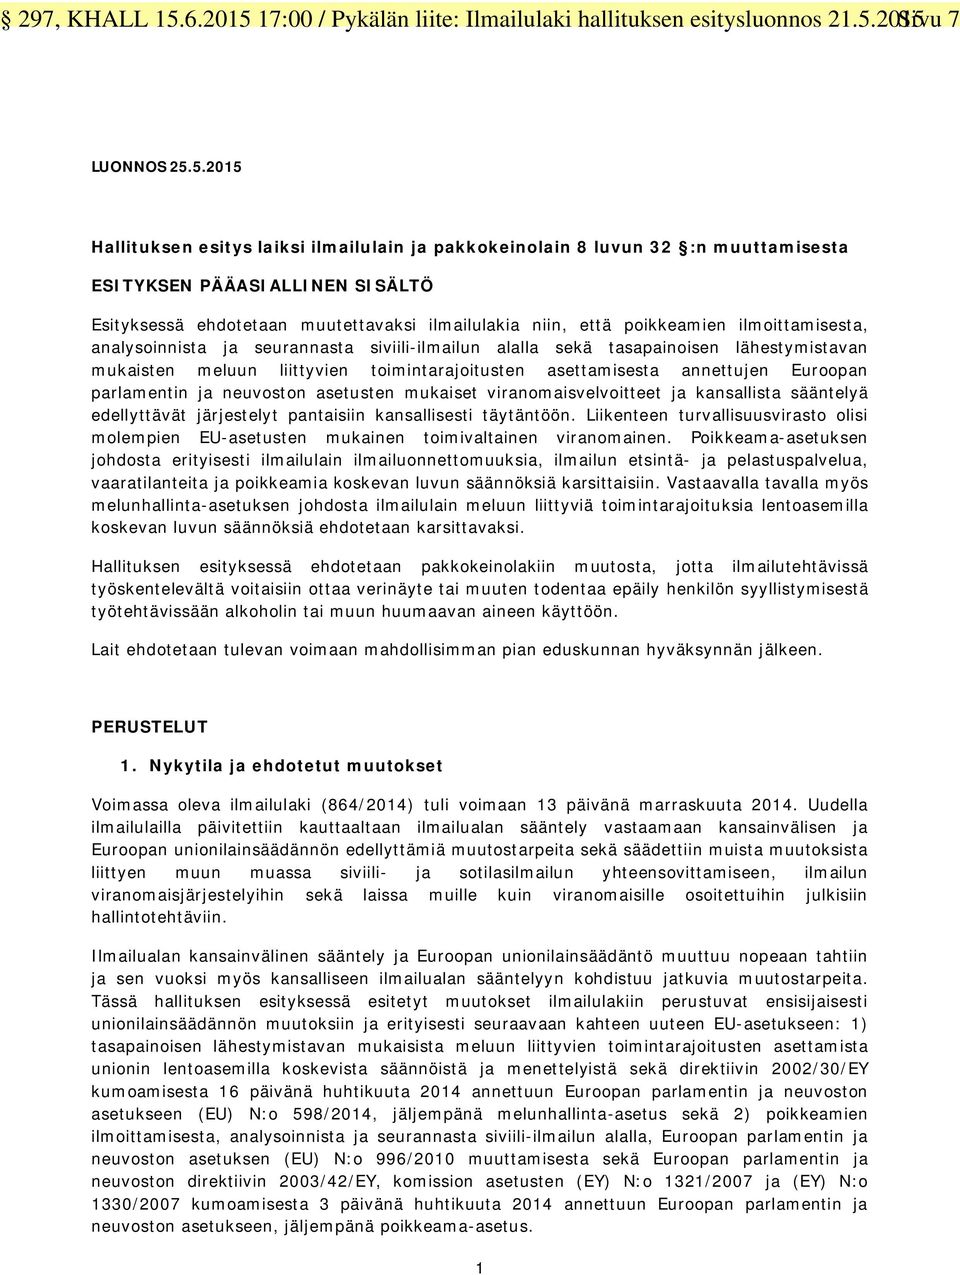 17:00 / Pykälän liite: Ilmailulaki hallituksen esitysluonnos 21.5.